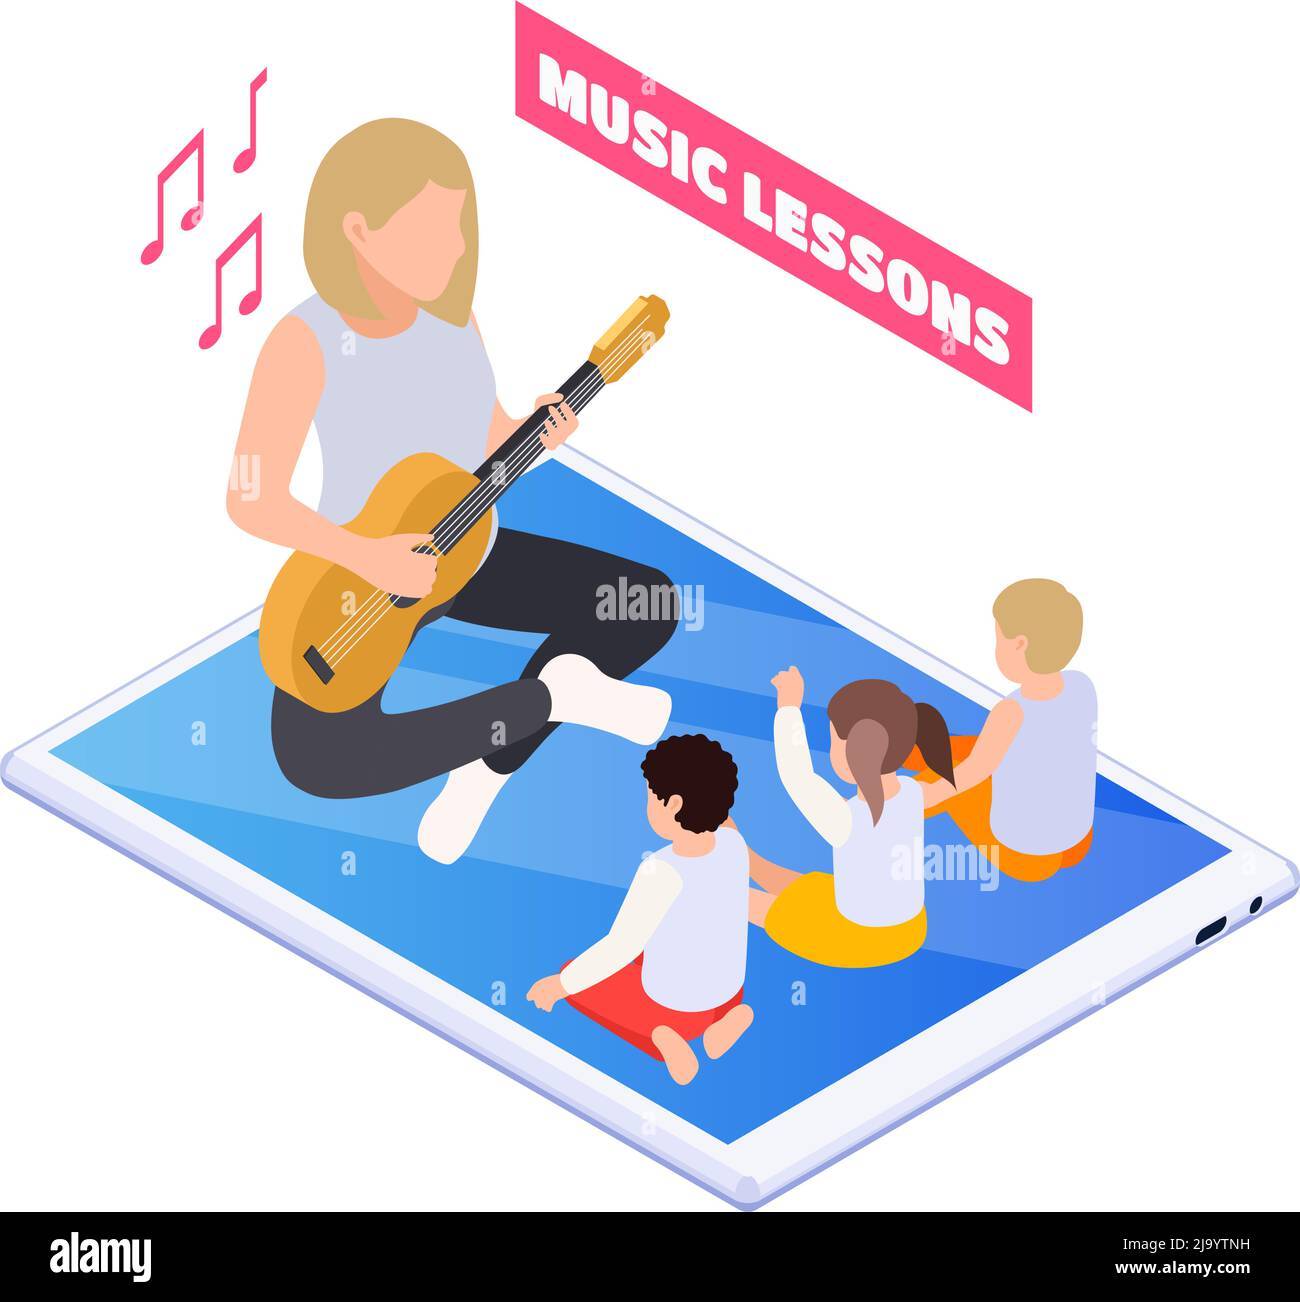 Home Bildung Symbol mit Lehrer spielen Gitarre und Kinder singen auf Online-Musikunterricht isometrische Vektor Illustration Stock Vektor